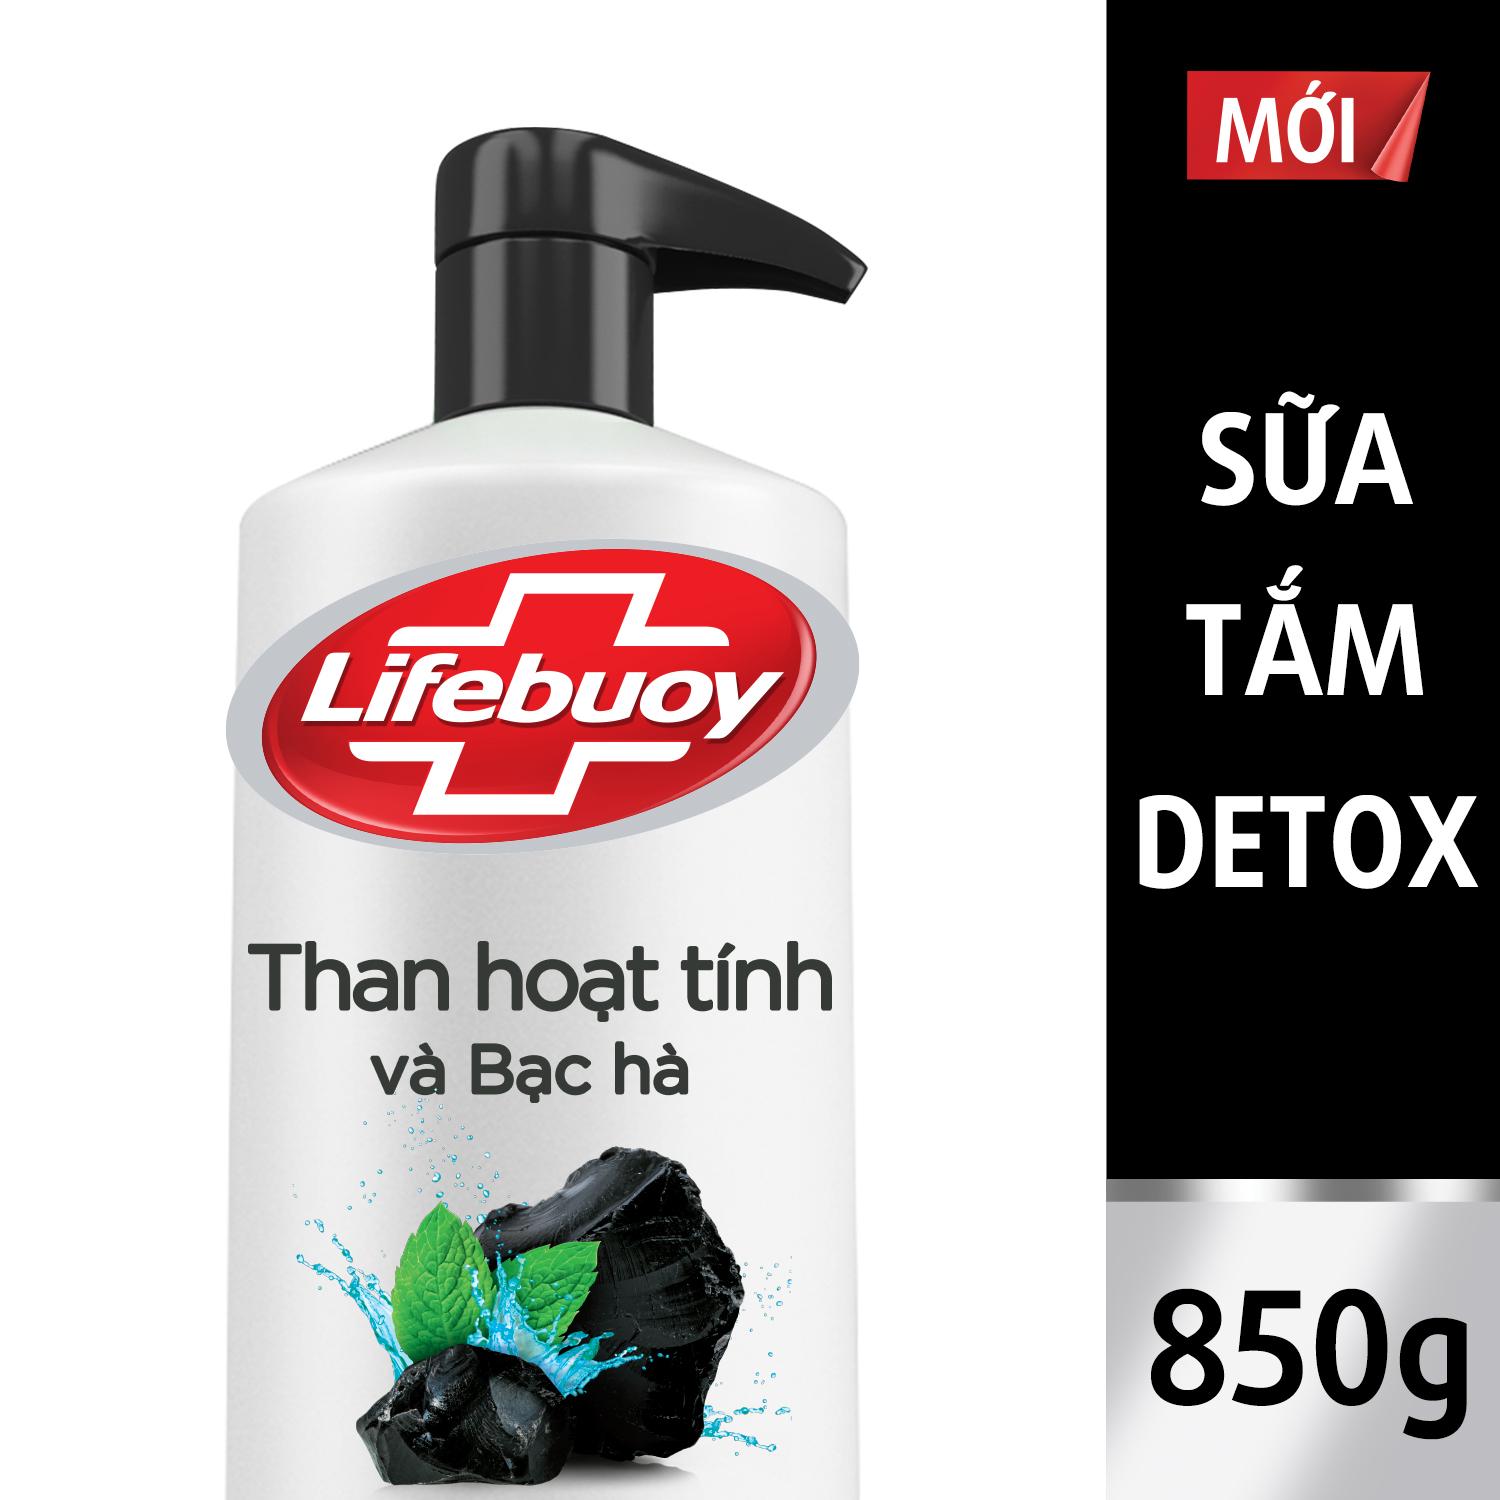 Sữa tắm Detox Lifebuoy - Than hoạt tính & Bạc hà 850g